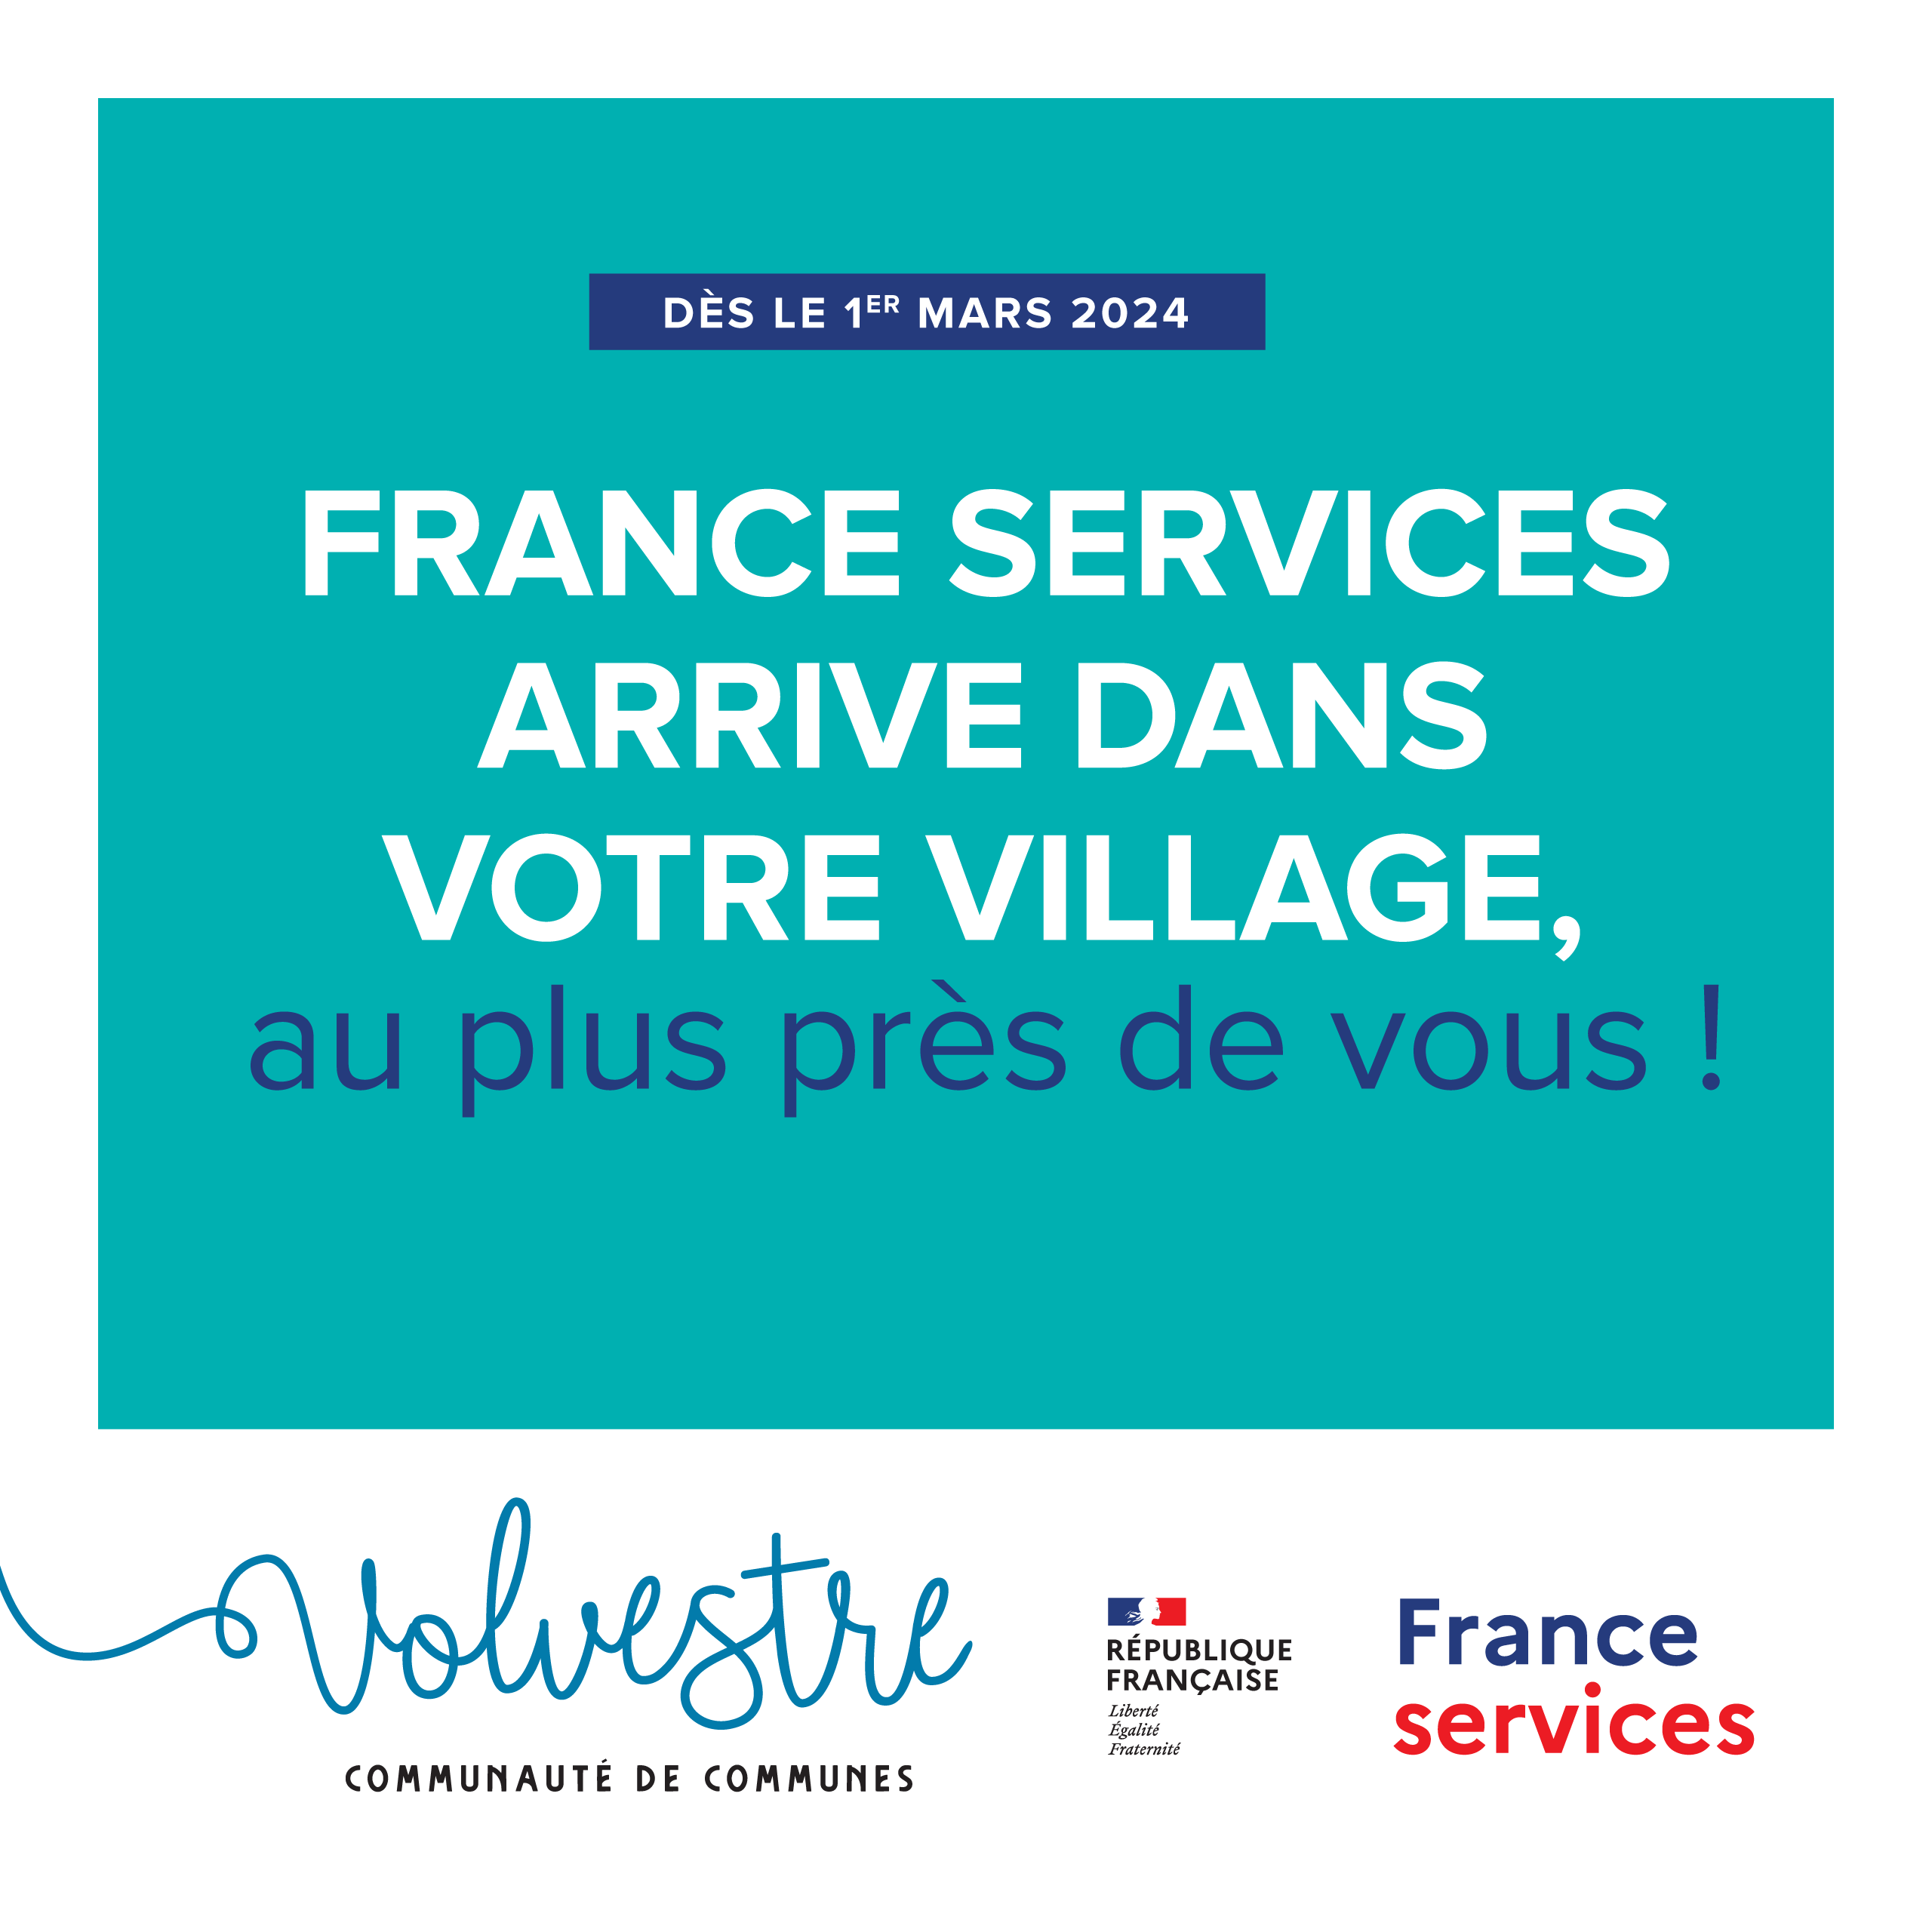 France Services - visuel 1@2x.png